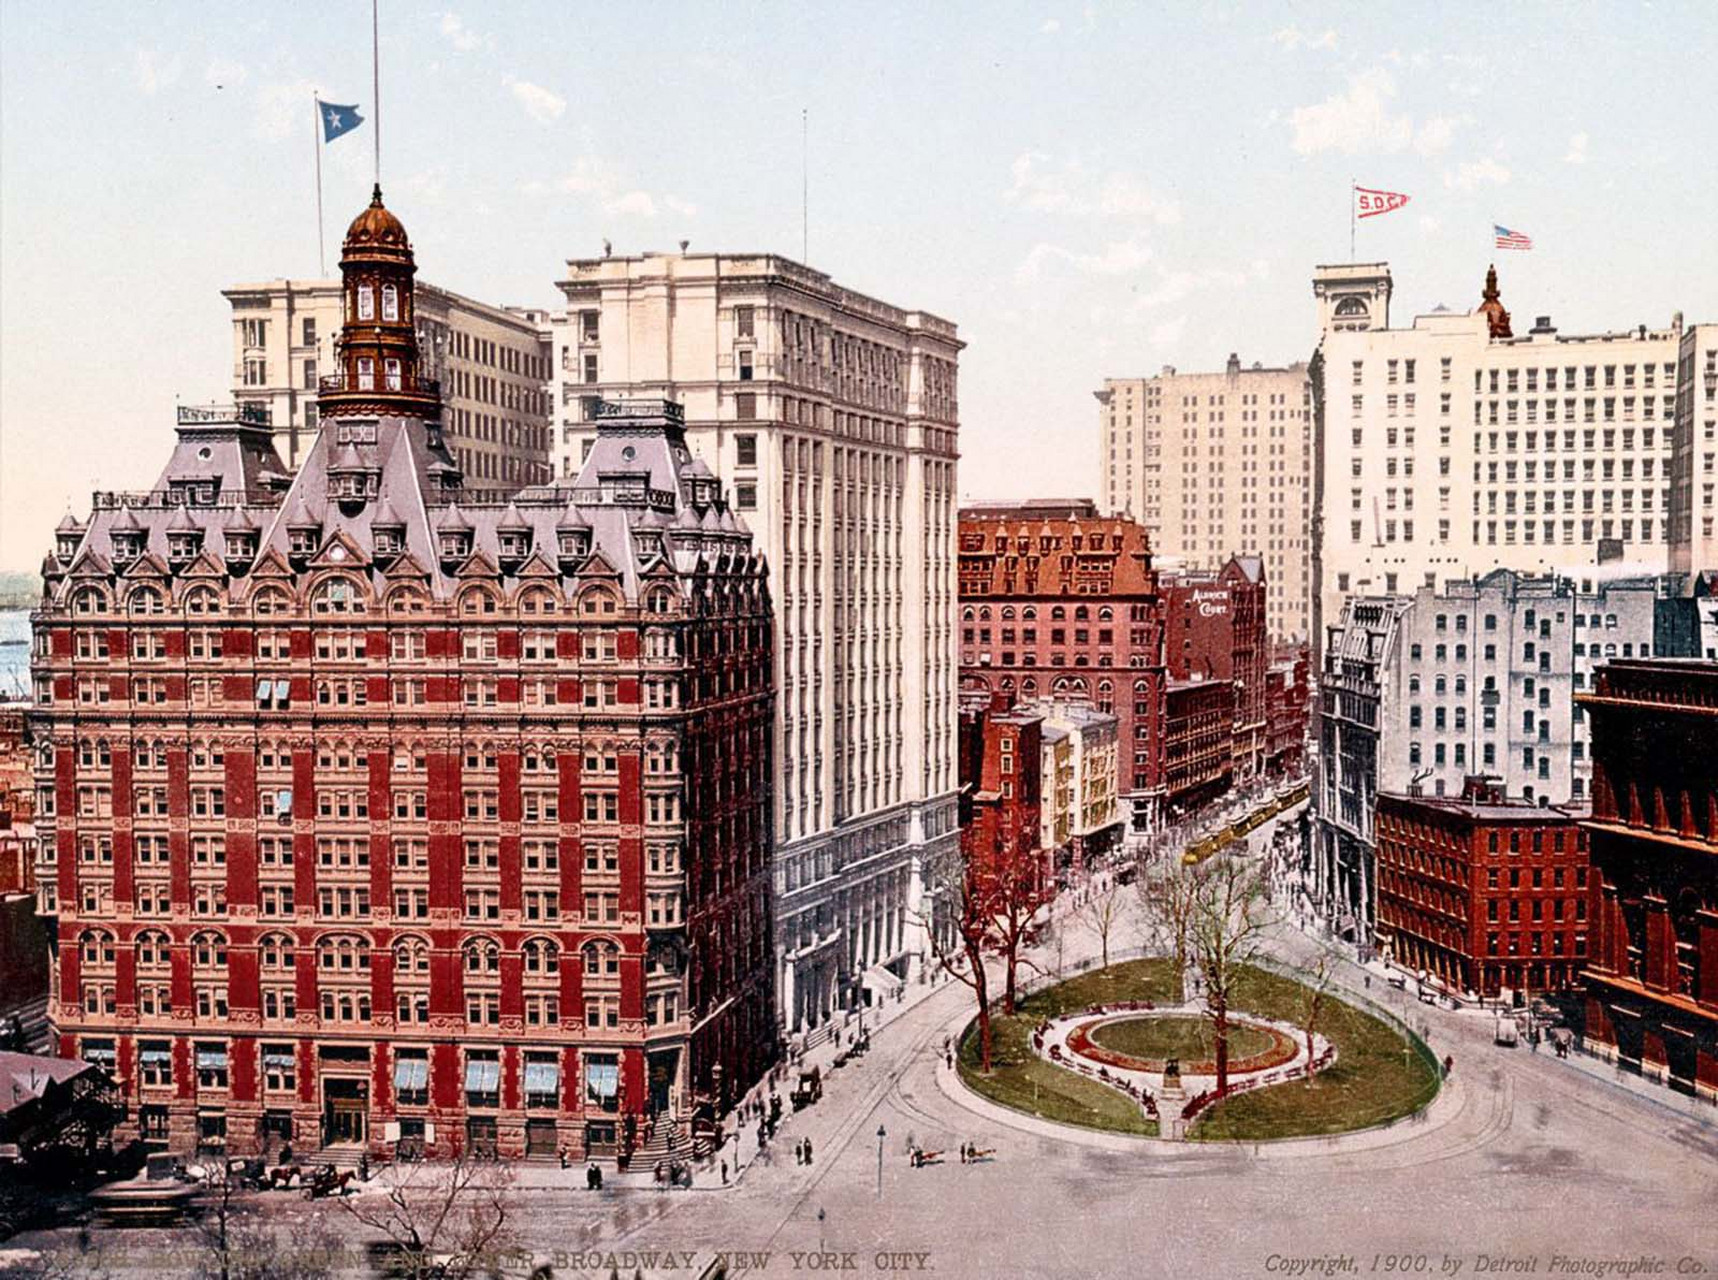 这篇文章介绍了一组100年前的美国纽约彩色老照片,这些照片展示了当时